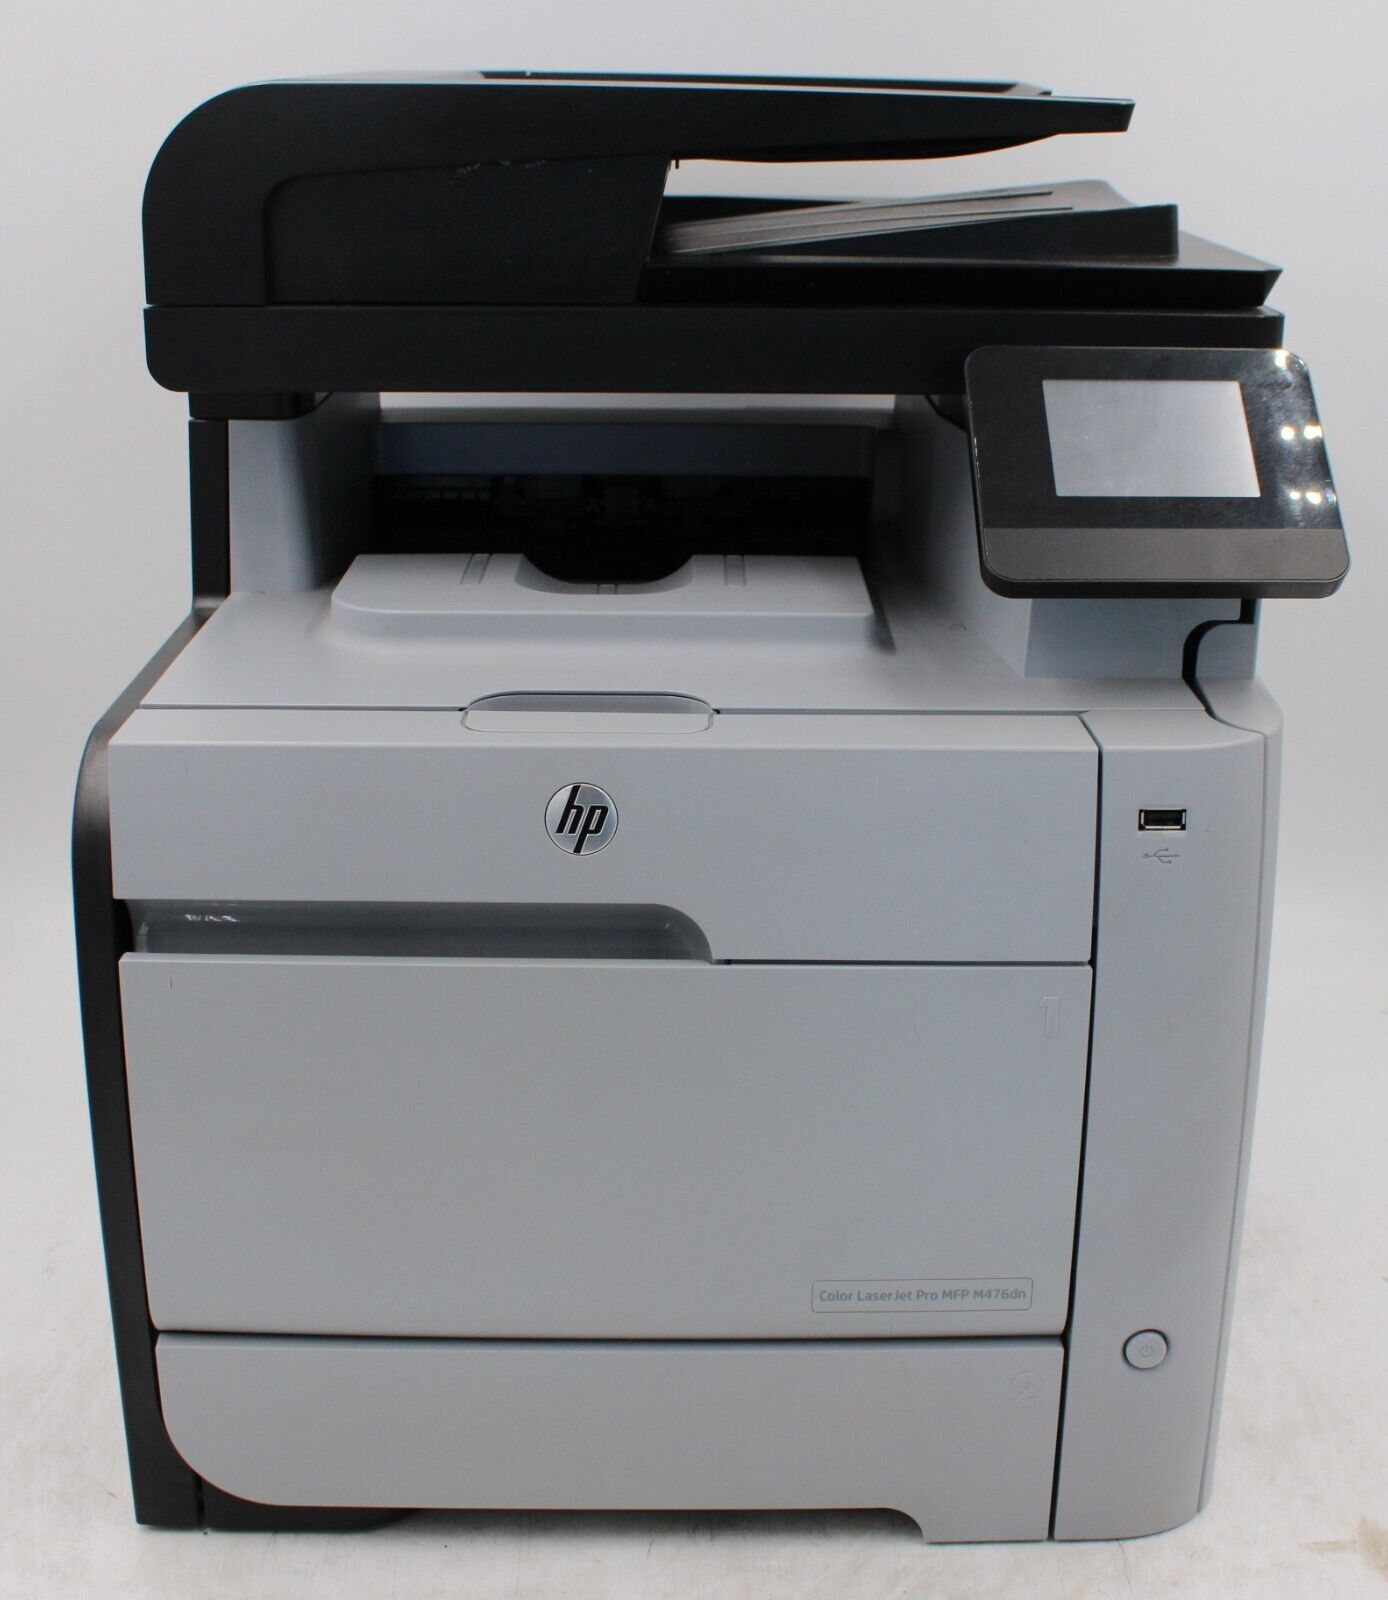 HP Color LaserJet Pro MFP M476dn Color Multifunction Laser Printer With Toner